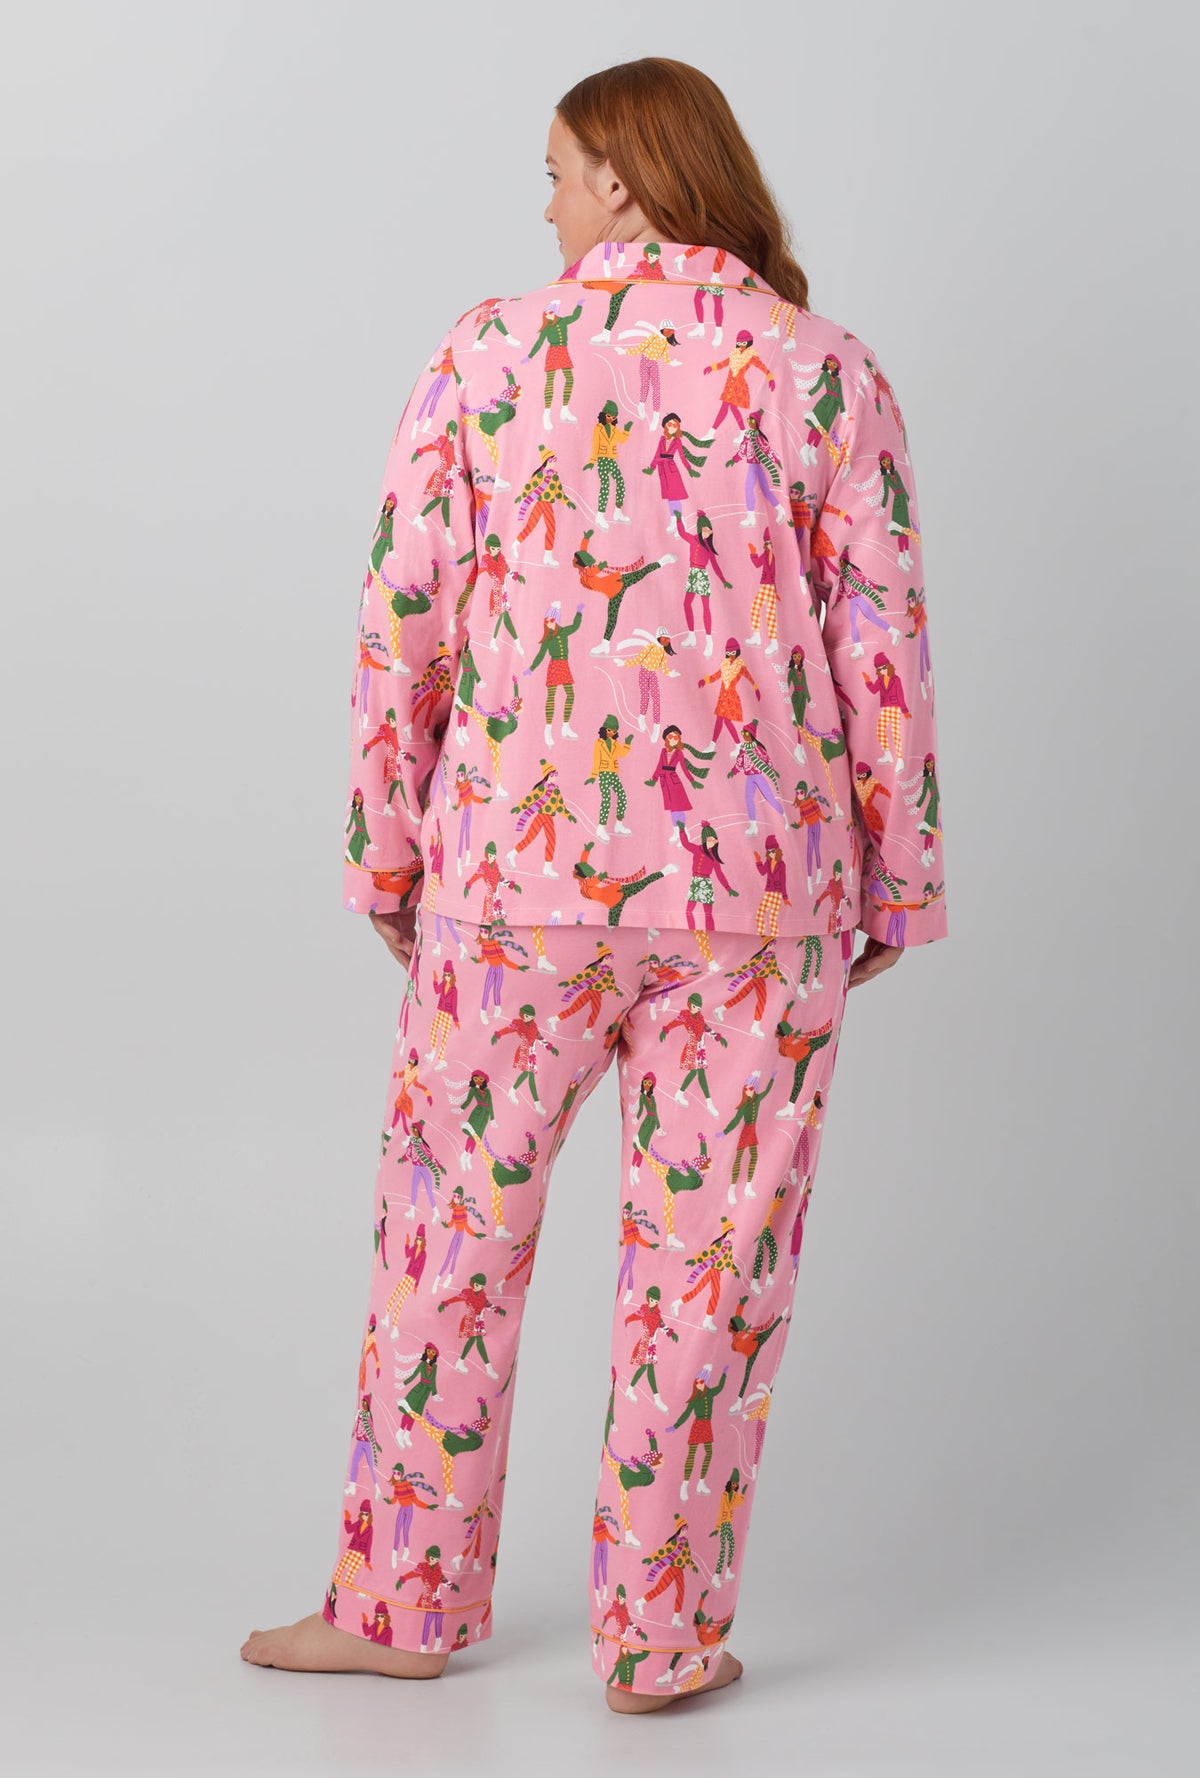 Bedhead Pajamas Silk Pajamas Ice Pink